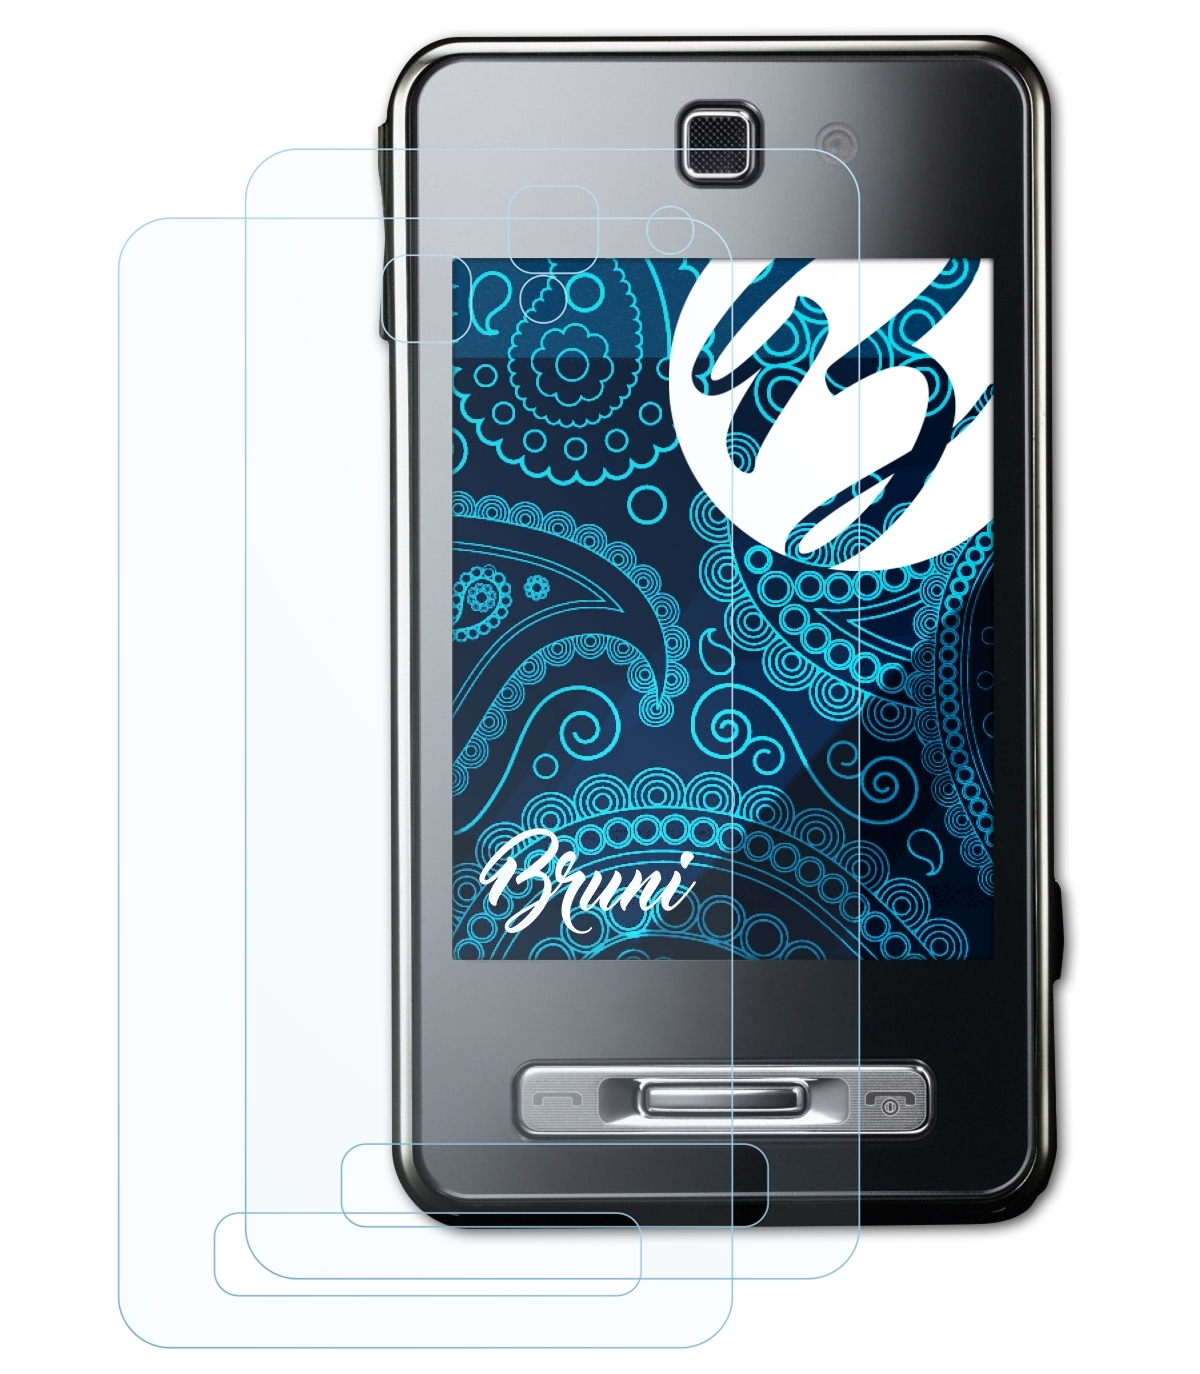 BRUNI 2x SGH-F480i) Samsung Schutzfolie(für Basics-Clear